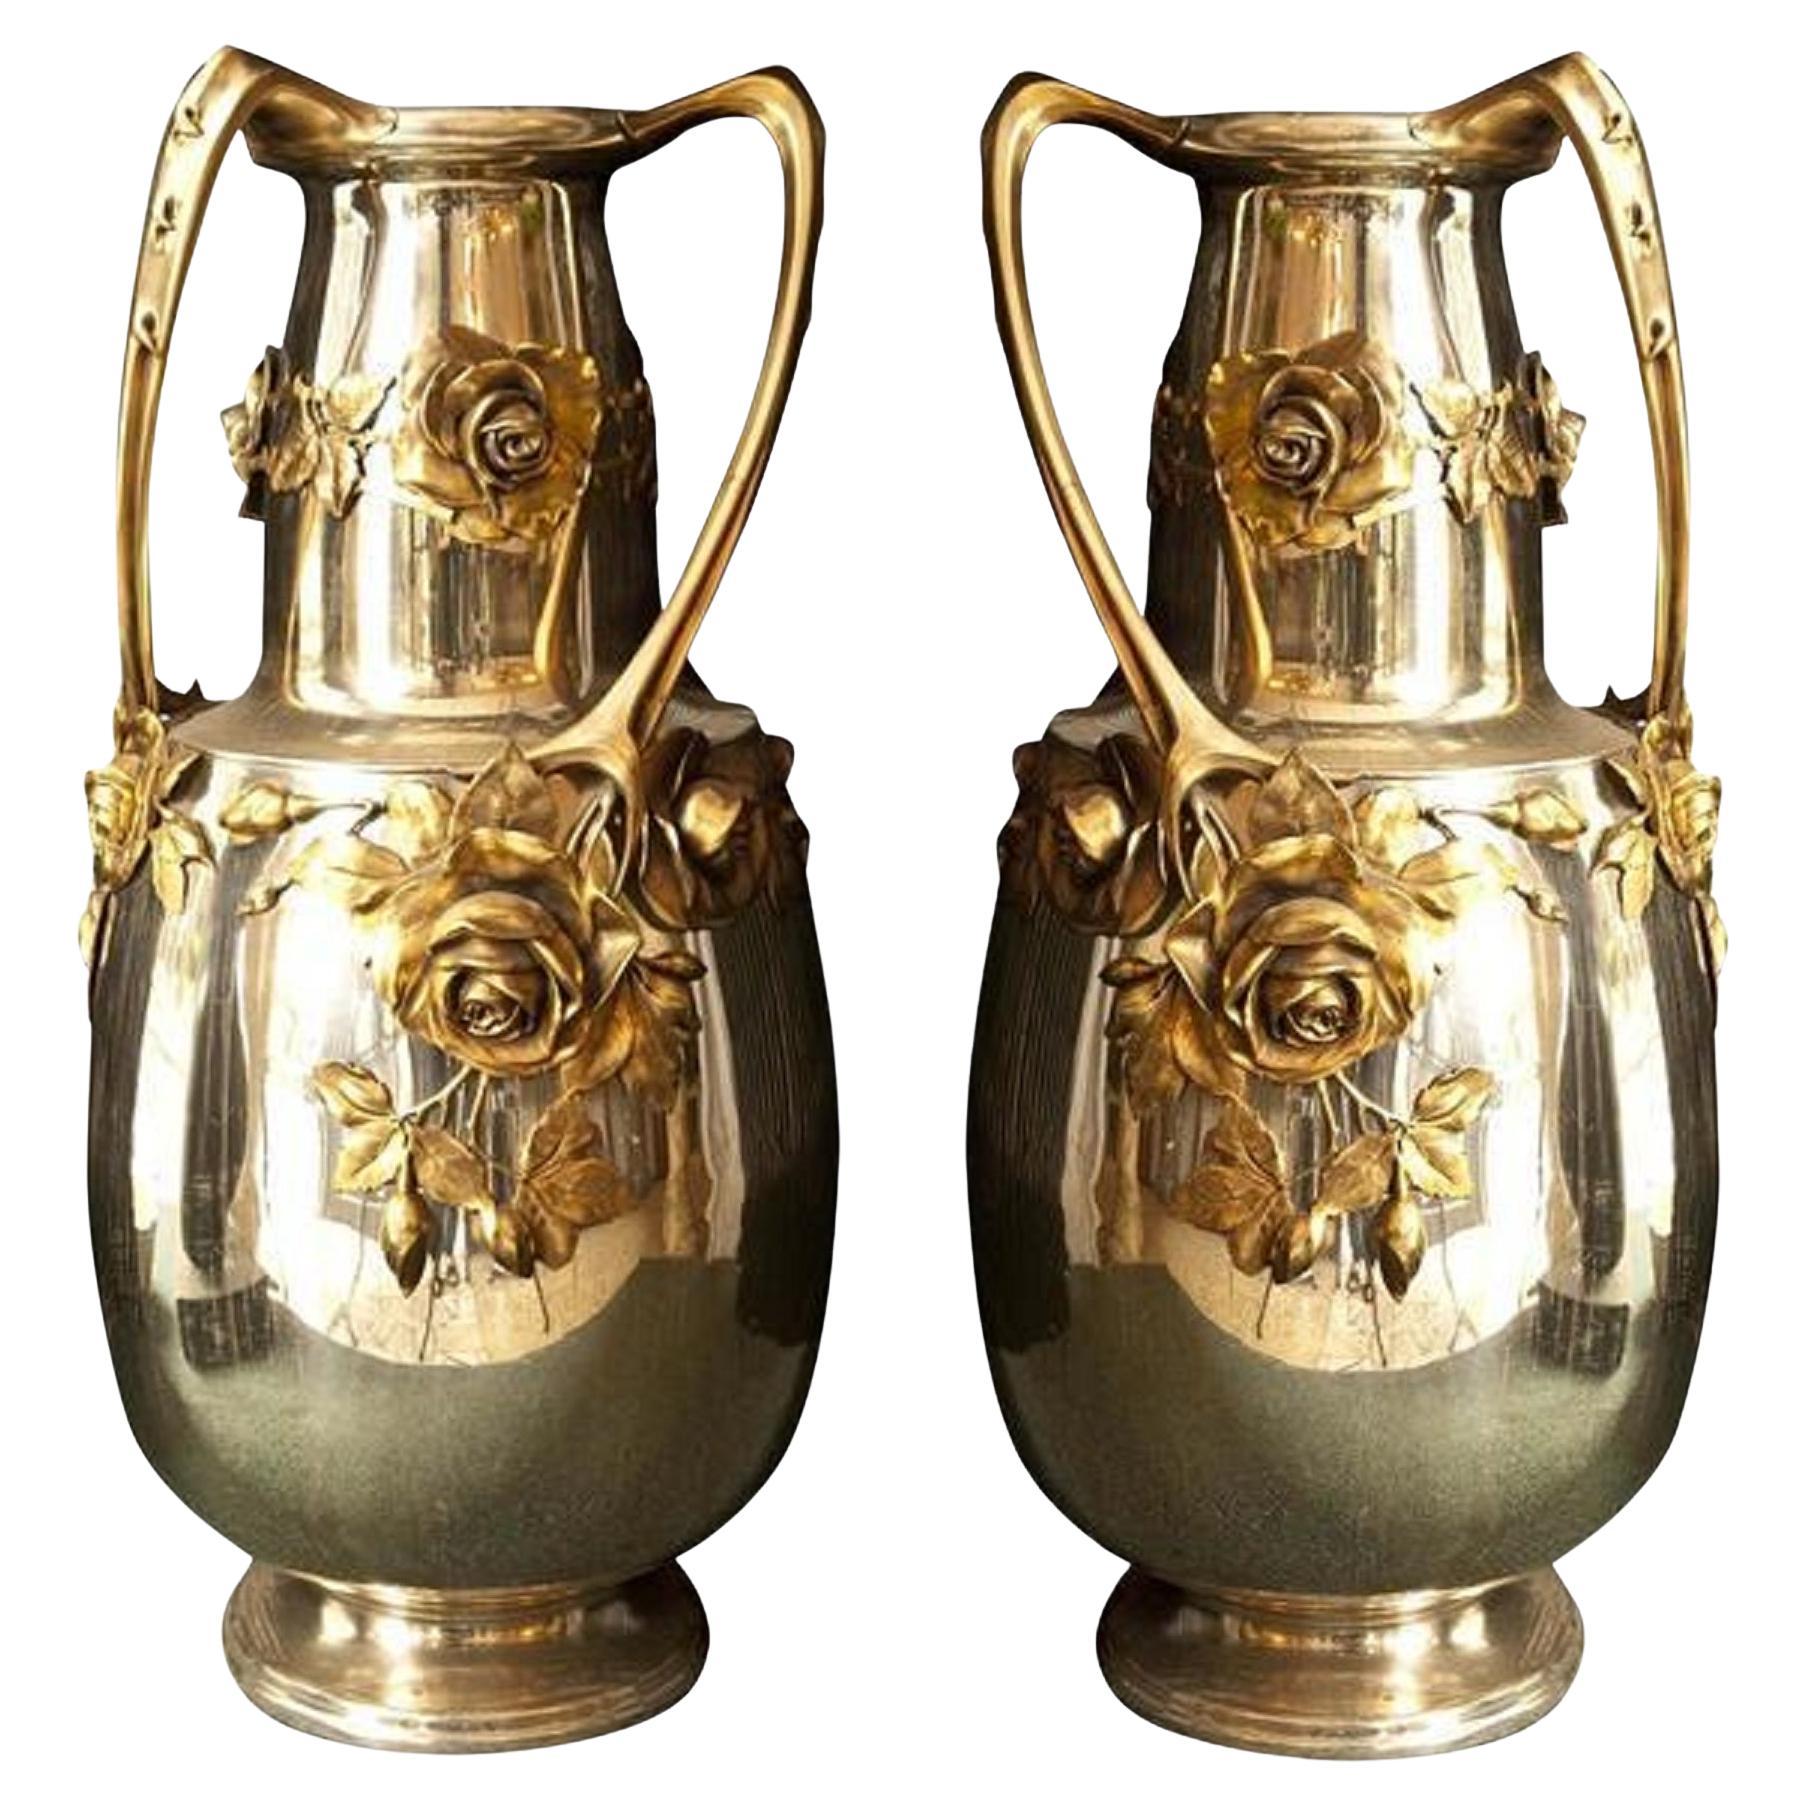 2 Vases amaizing Kayser, « Allemand », 1900, Style : Jugendstil, Art Nouveau, Liberty